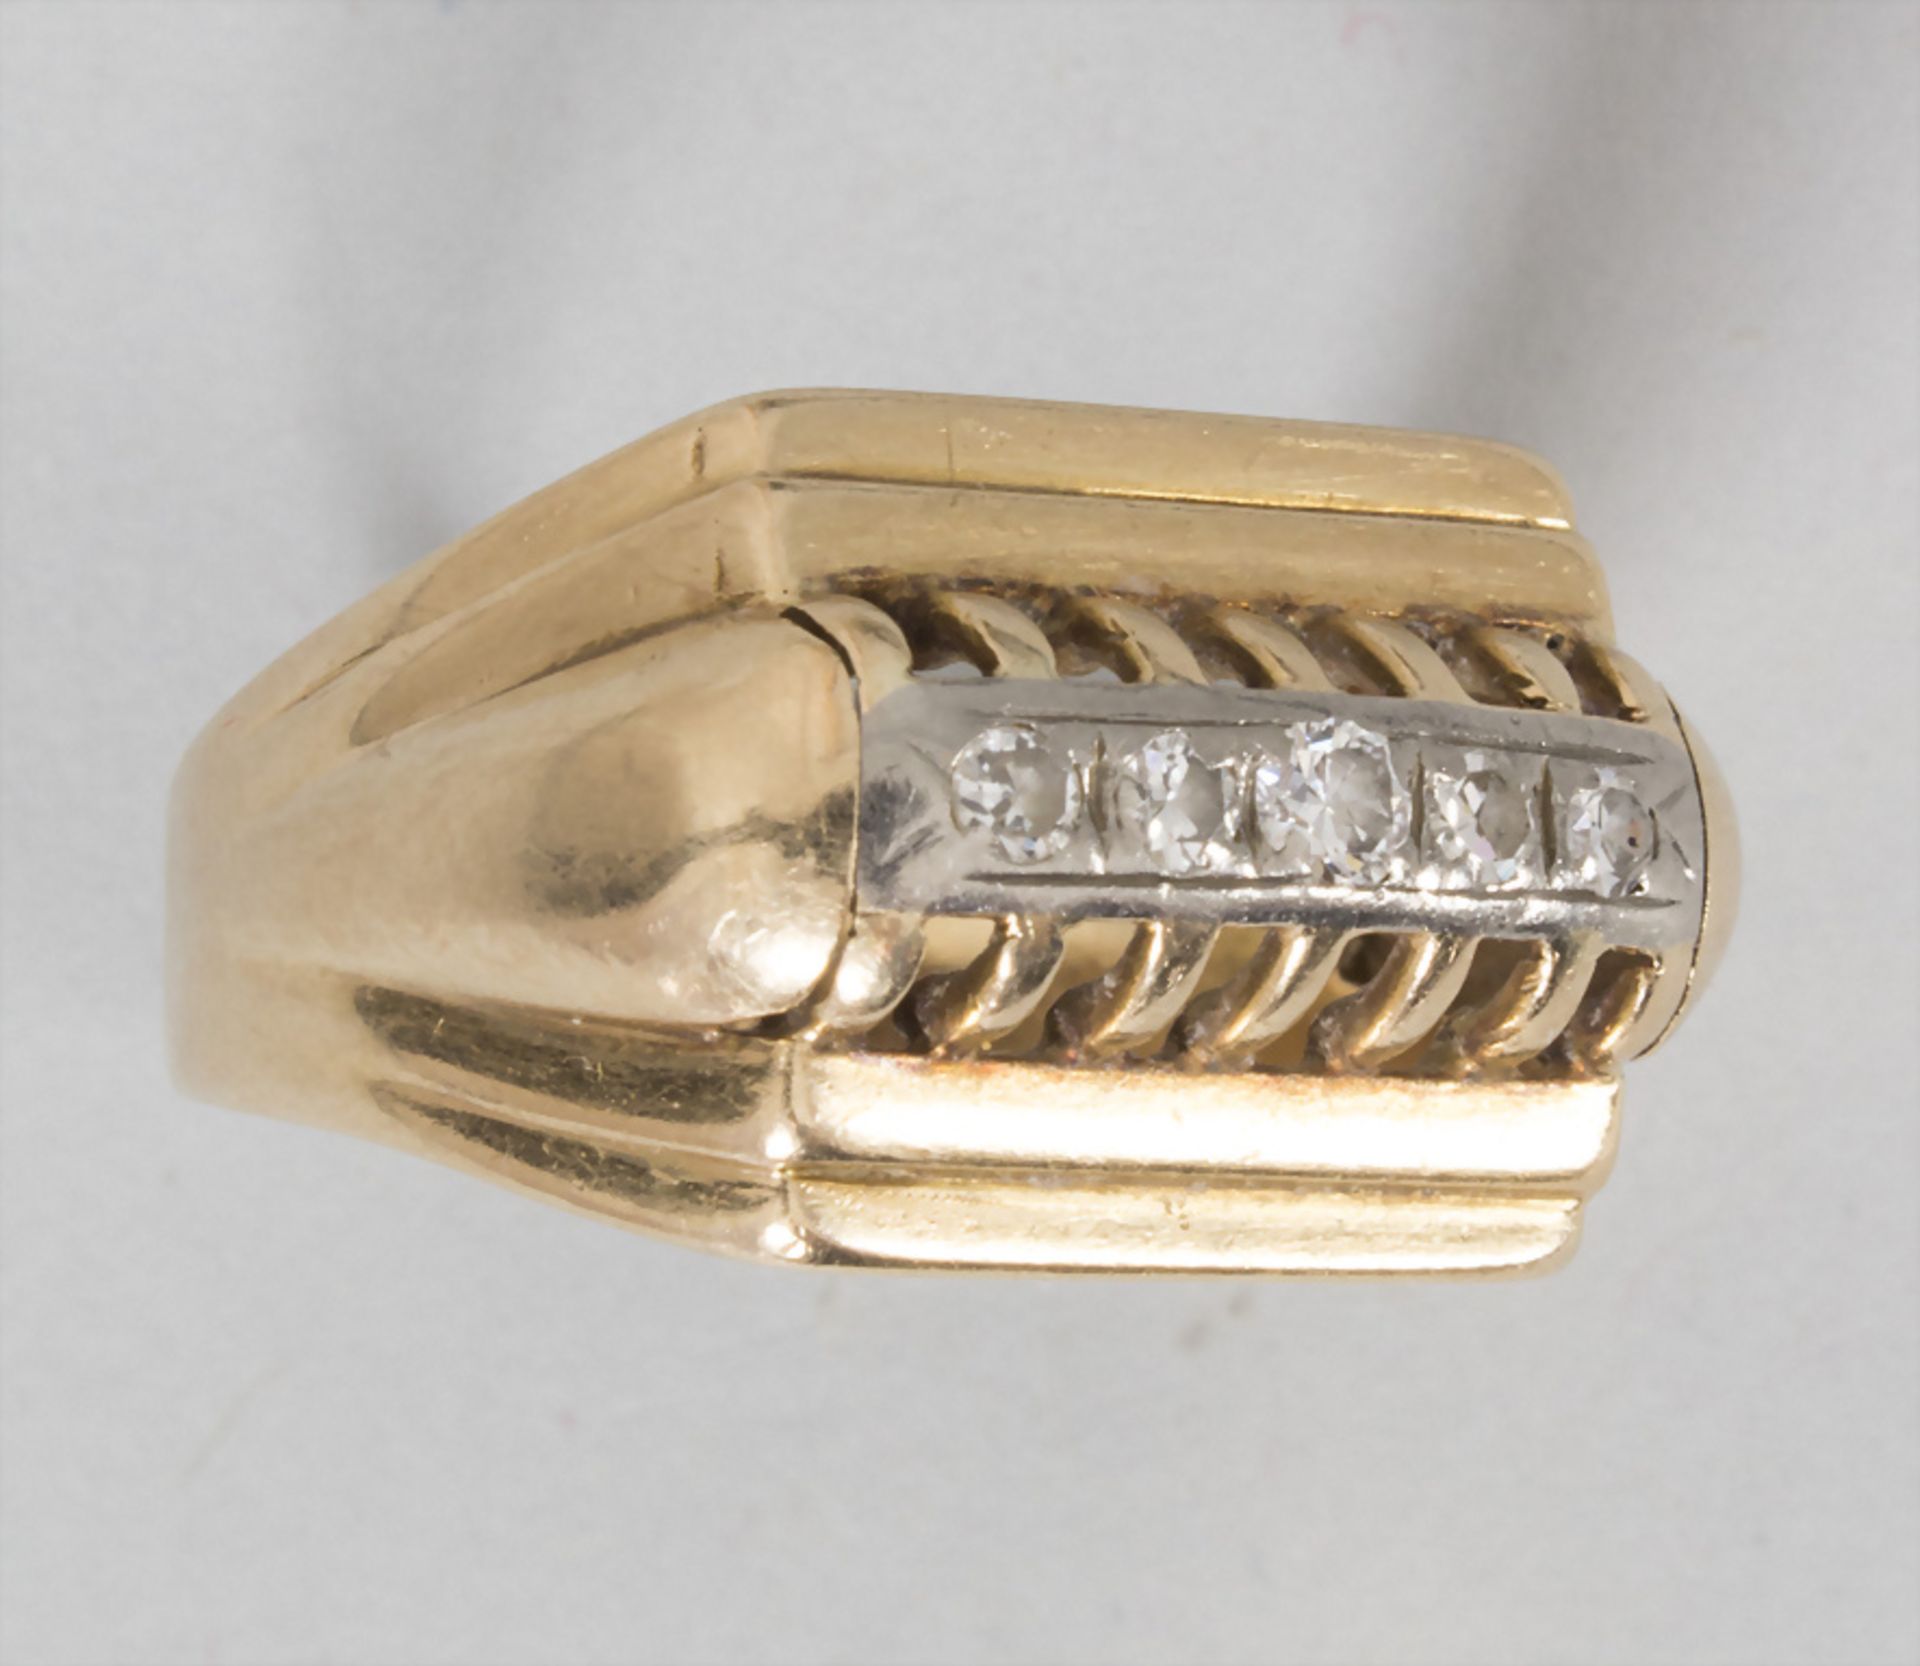 Damenring mit Diamanten / An 18 ct gold ladies ring with diamonds